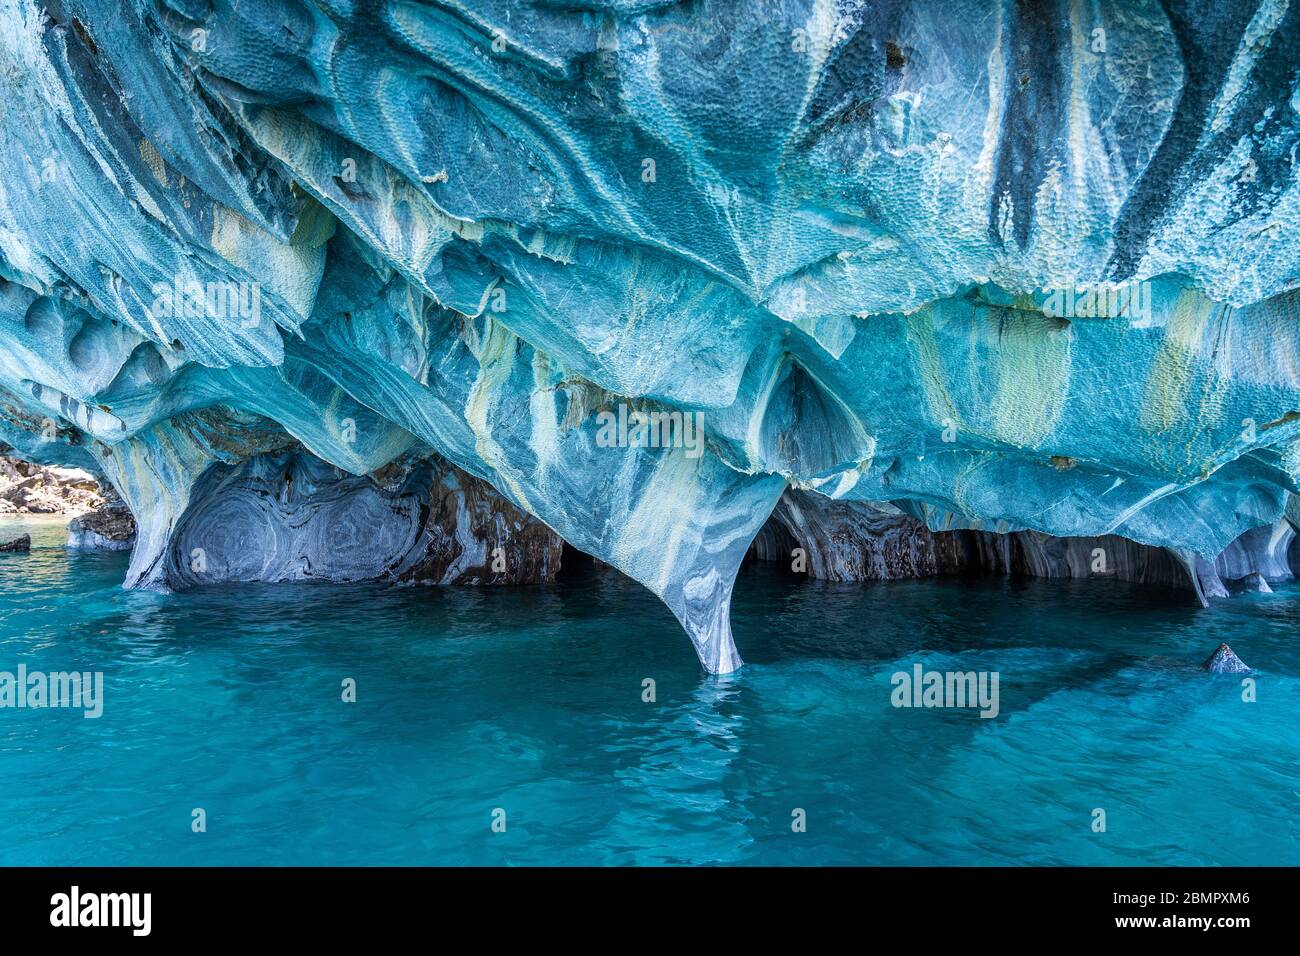 Die Marmorhöhlen (spanisch: Cuevas de Marmol), eine Reihe von natürlich geformten Höhlen im General Carrera See in Chile, Patagonien, Südamerika. Stockfoto